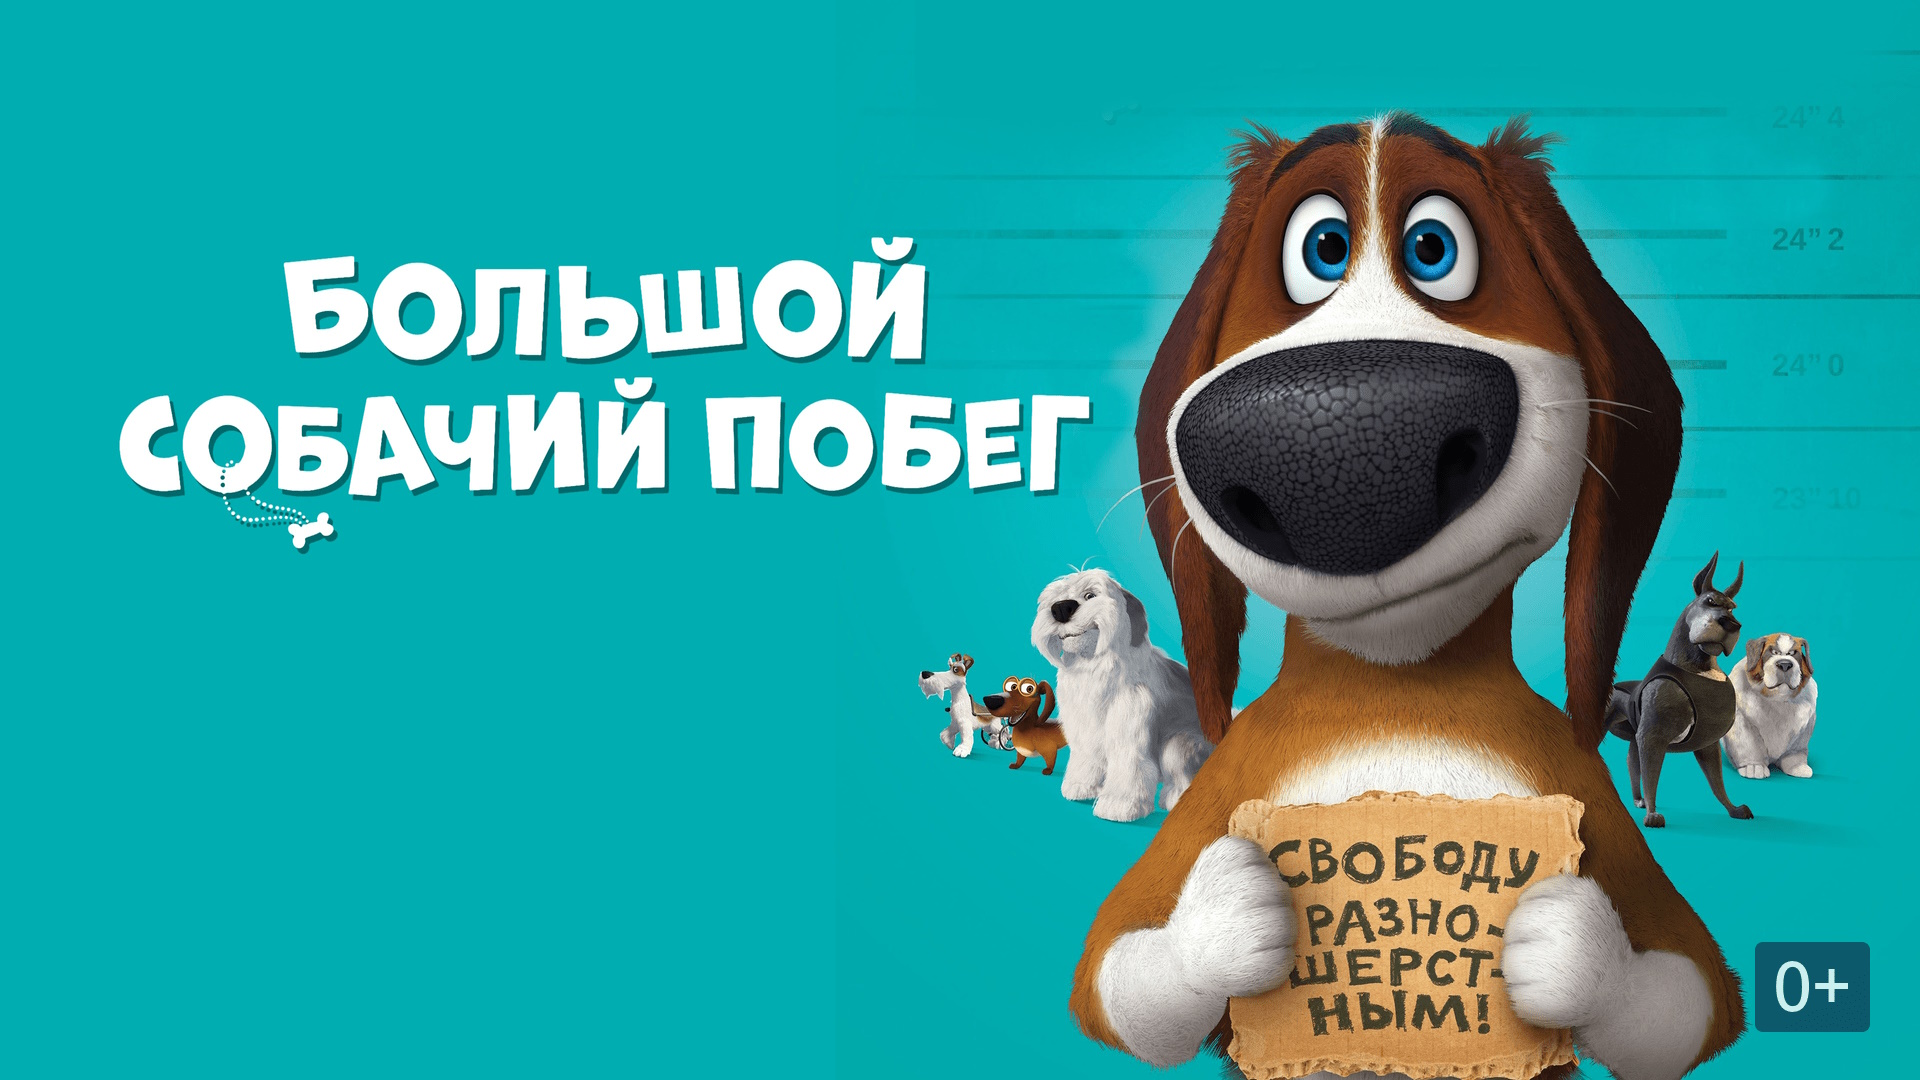 Большой собачий побег — Русский трейлер (#ок )